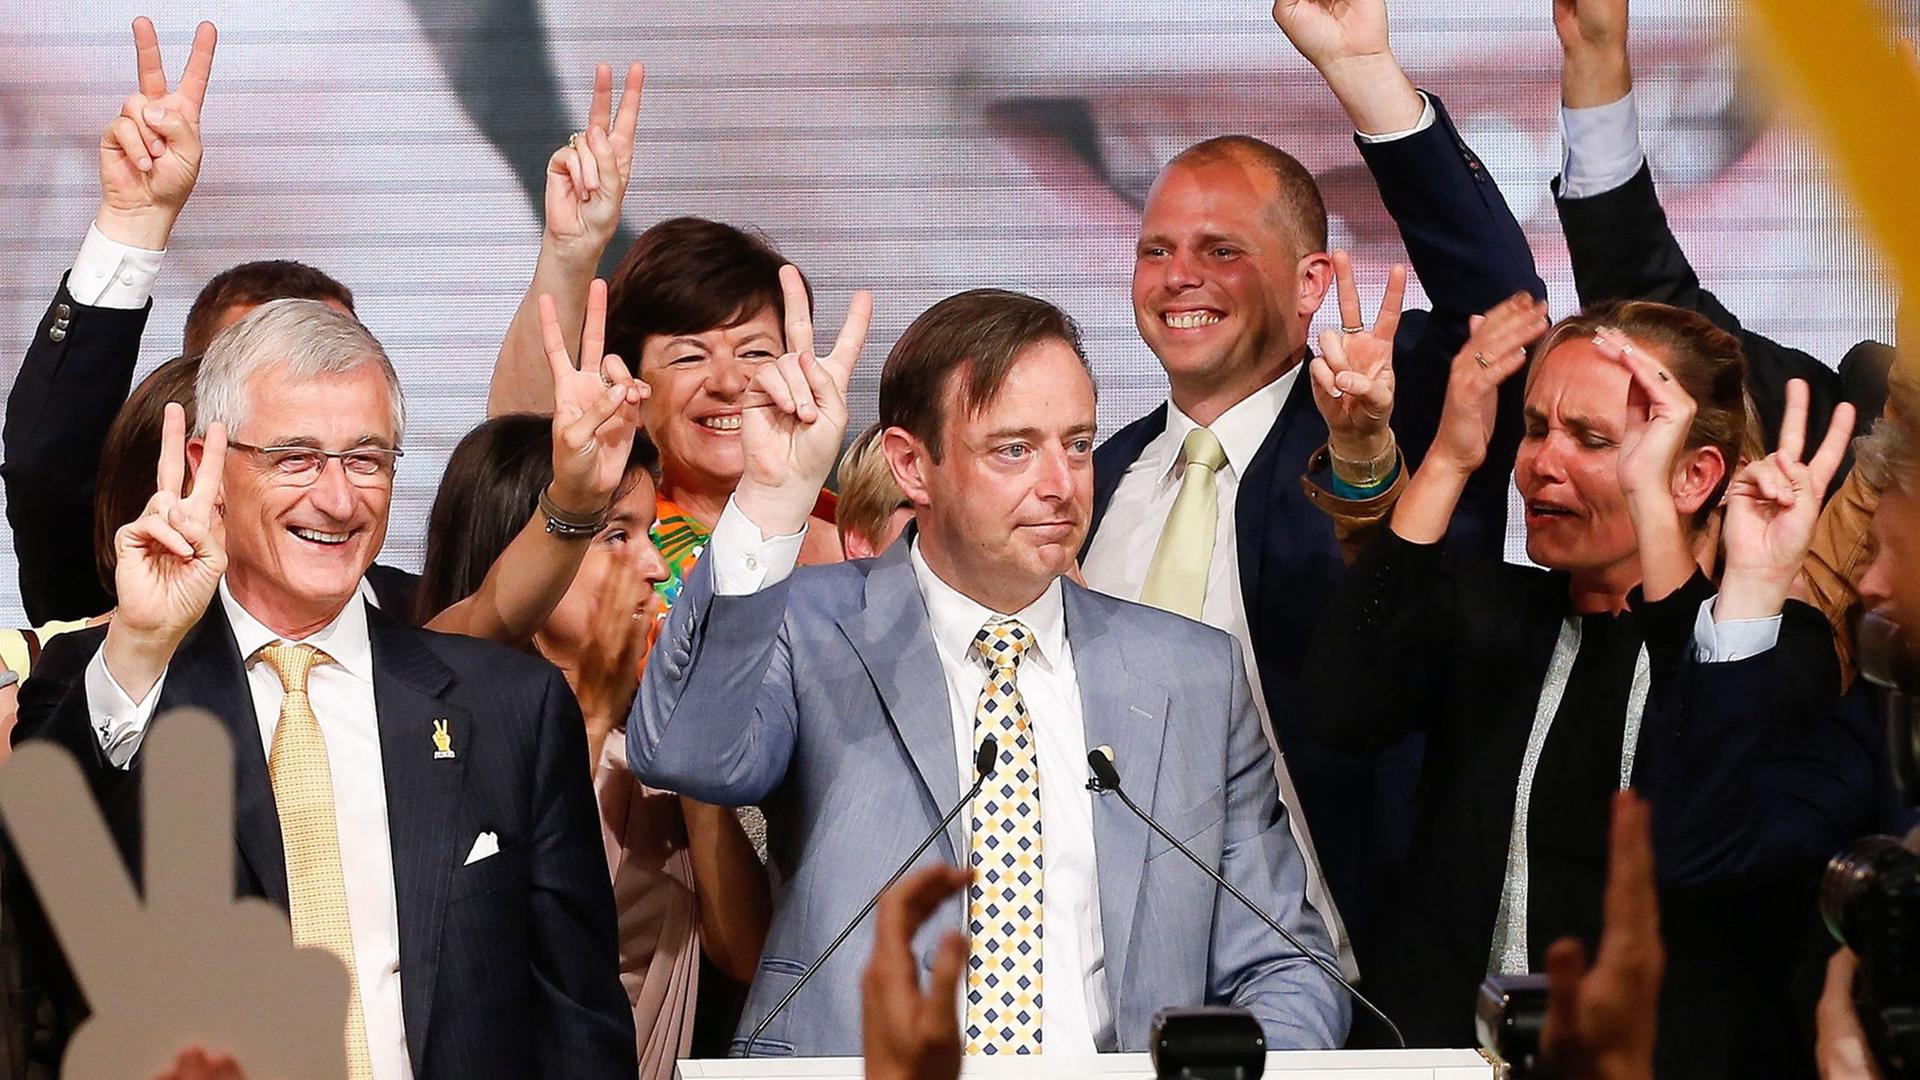 Die Neu-Flämische Allianz mit ihrem Vorsitzenden Bart de Wever (M.) feiert ihren Sieg bei der Parlamentswahl in Belgien.